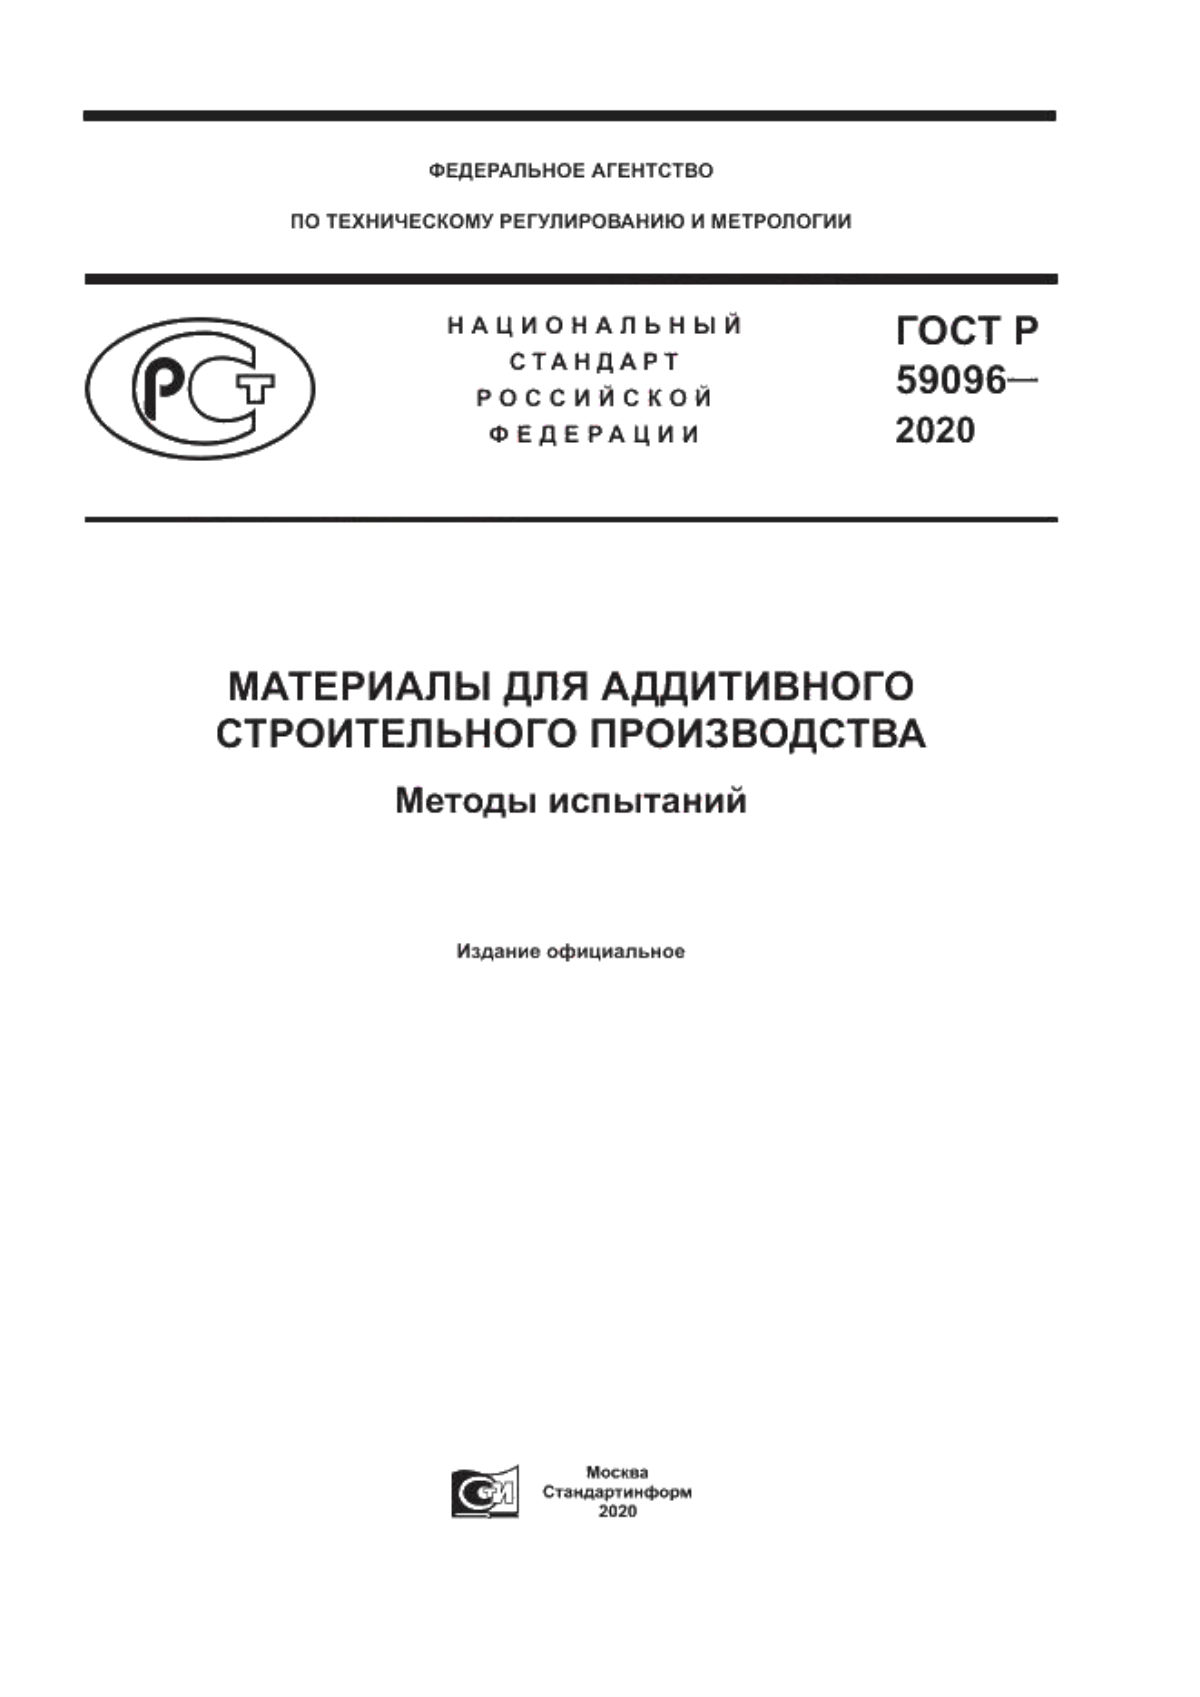 ГОСТ Р 59096-2020 Материалы для аддитивного строительного производства. Методы испытаний